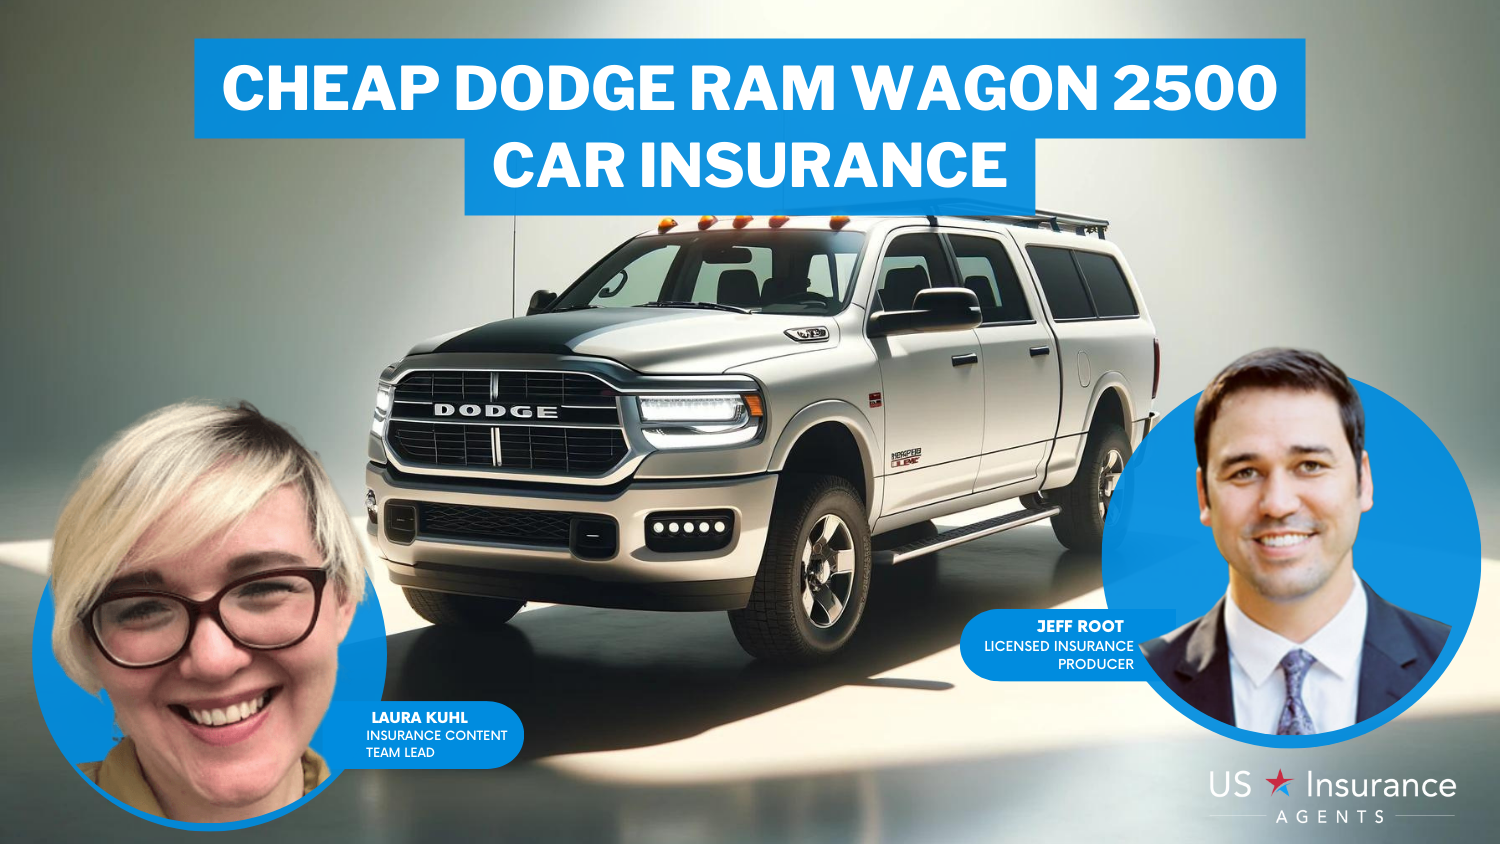 Cheap Dodge Ram Wagon 2500 Car Insurance: USAA, Erie, and AAA